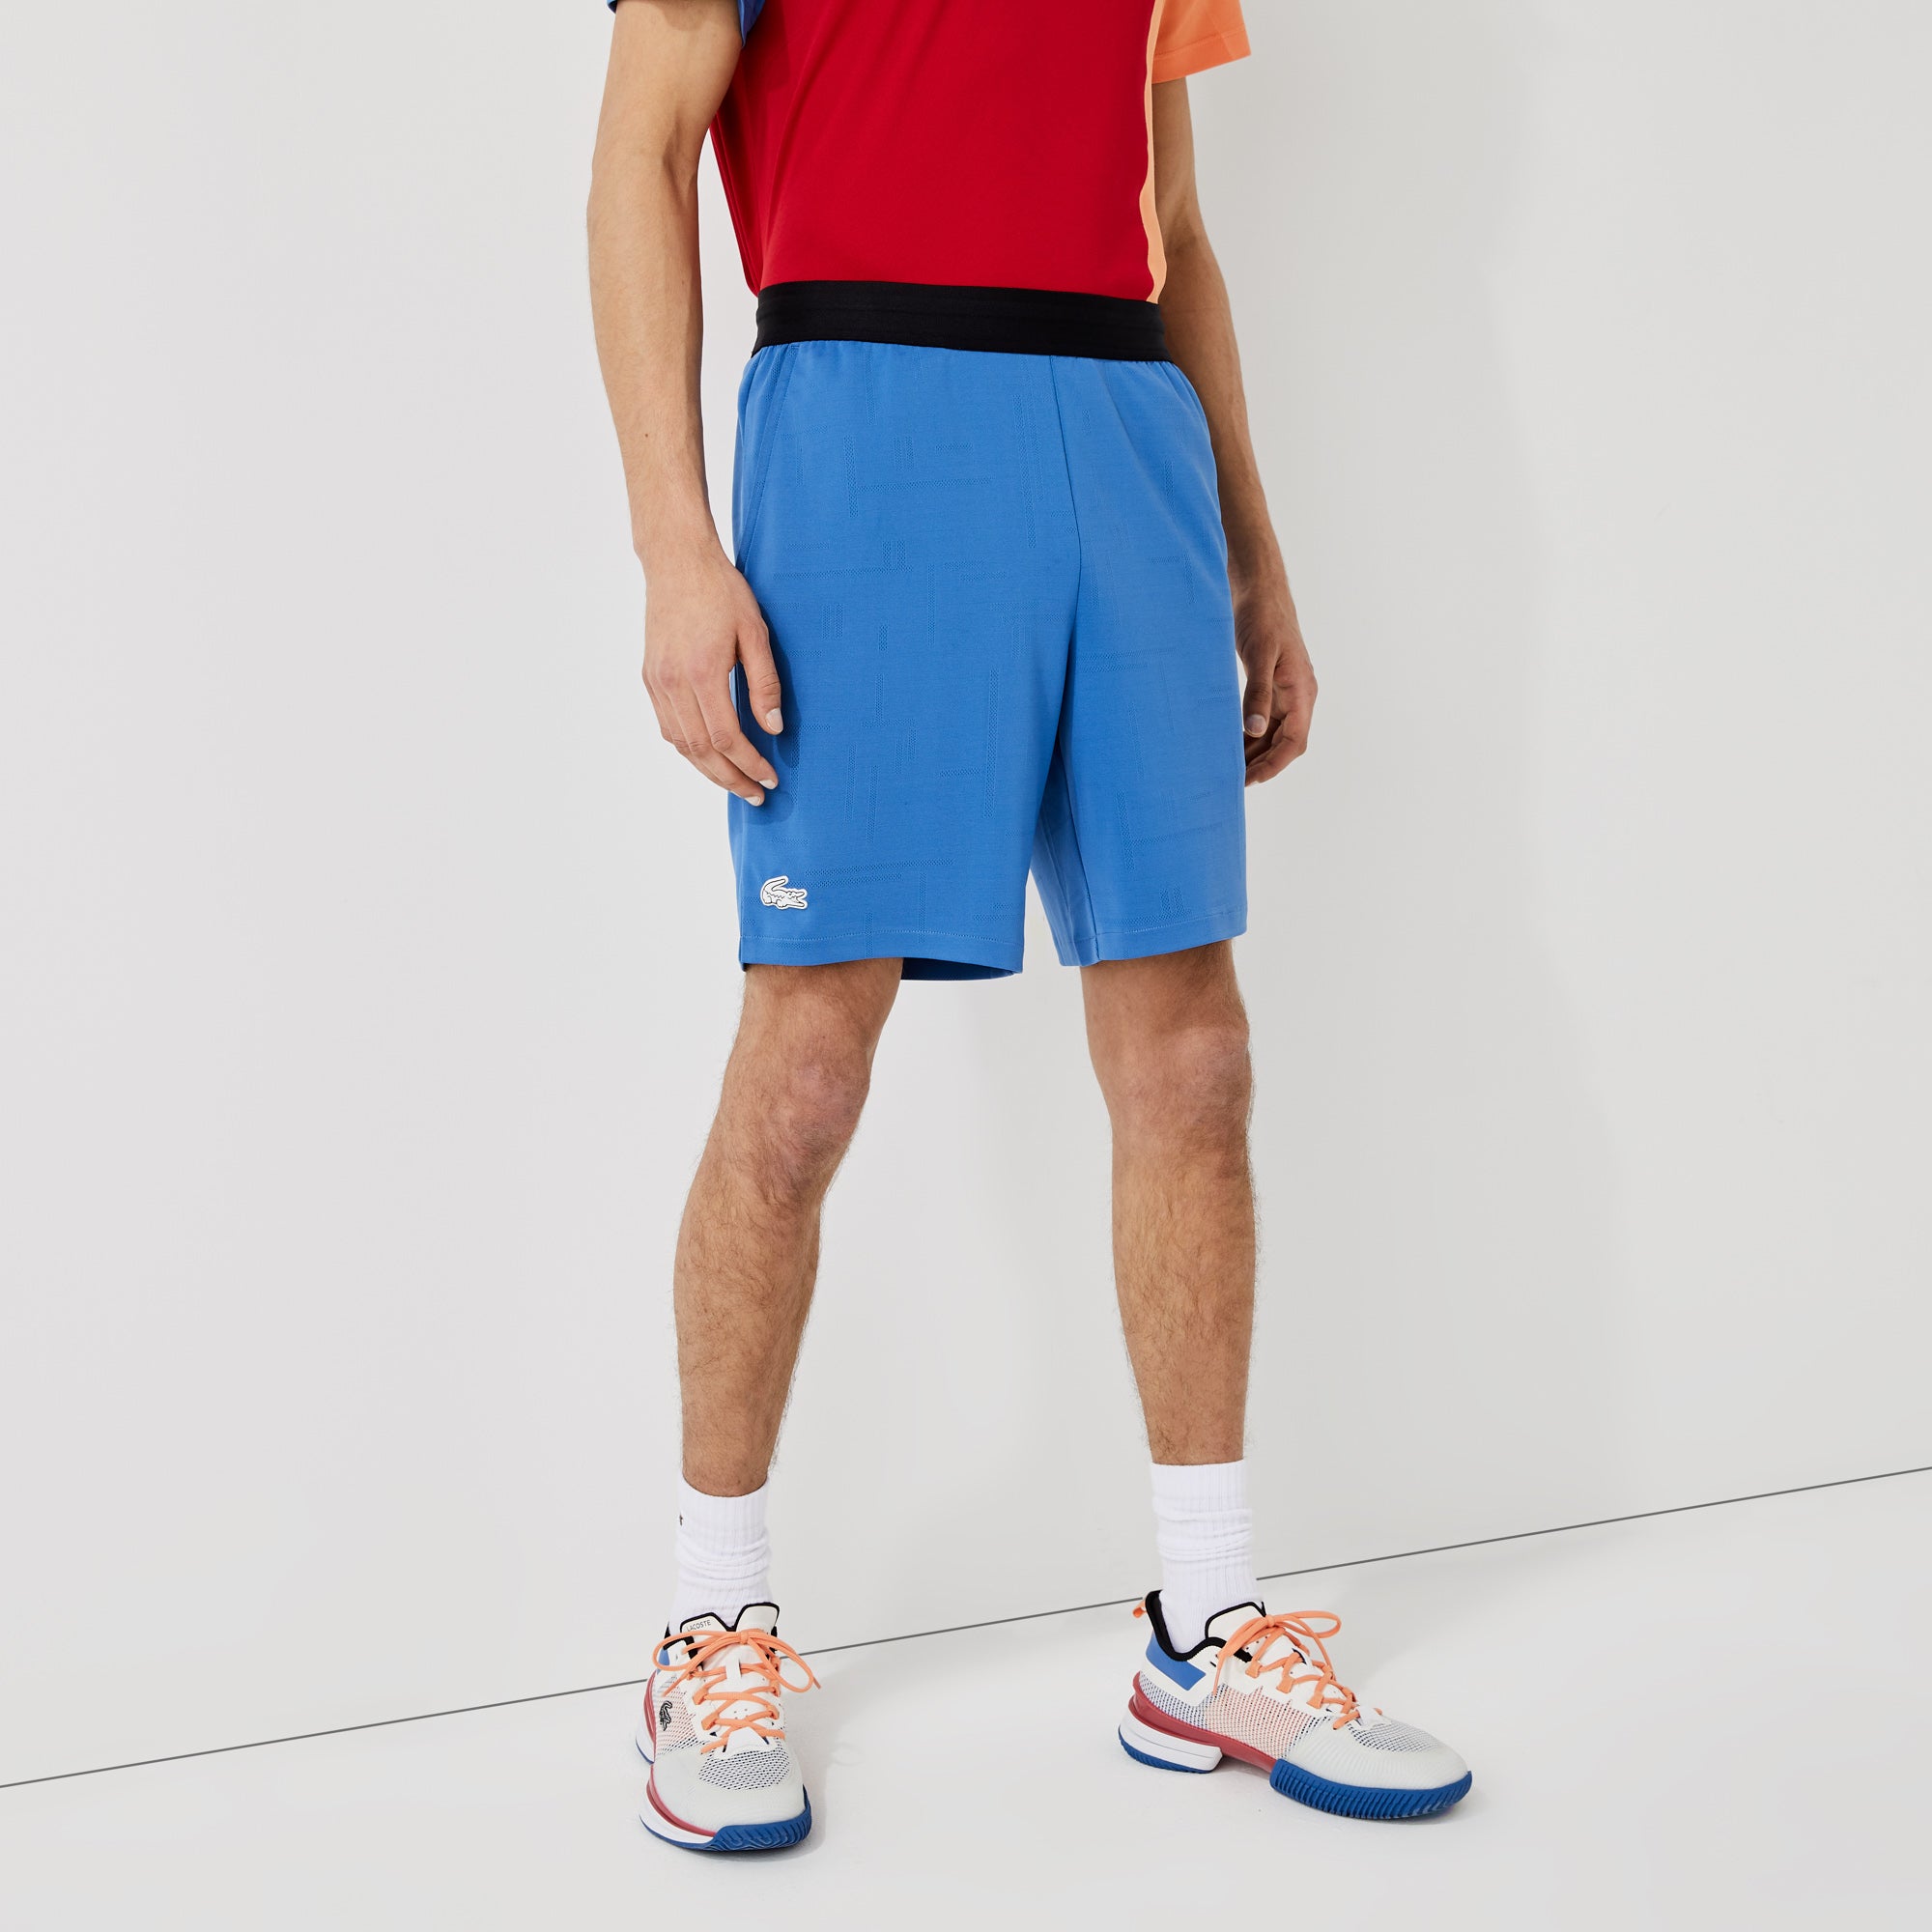 Lacoste Men's Jacquard Tennis Shorts Blue (1)